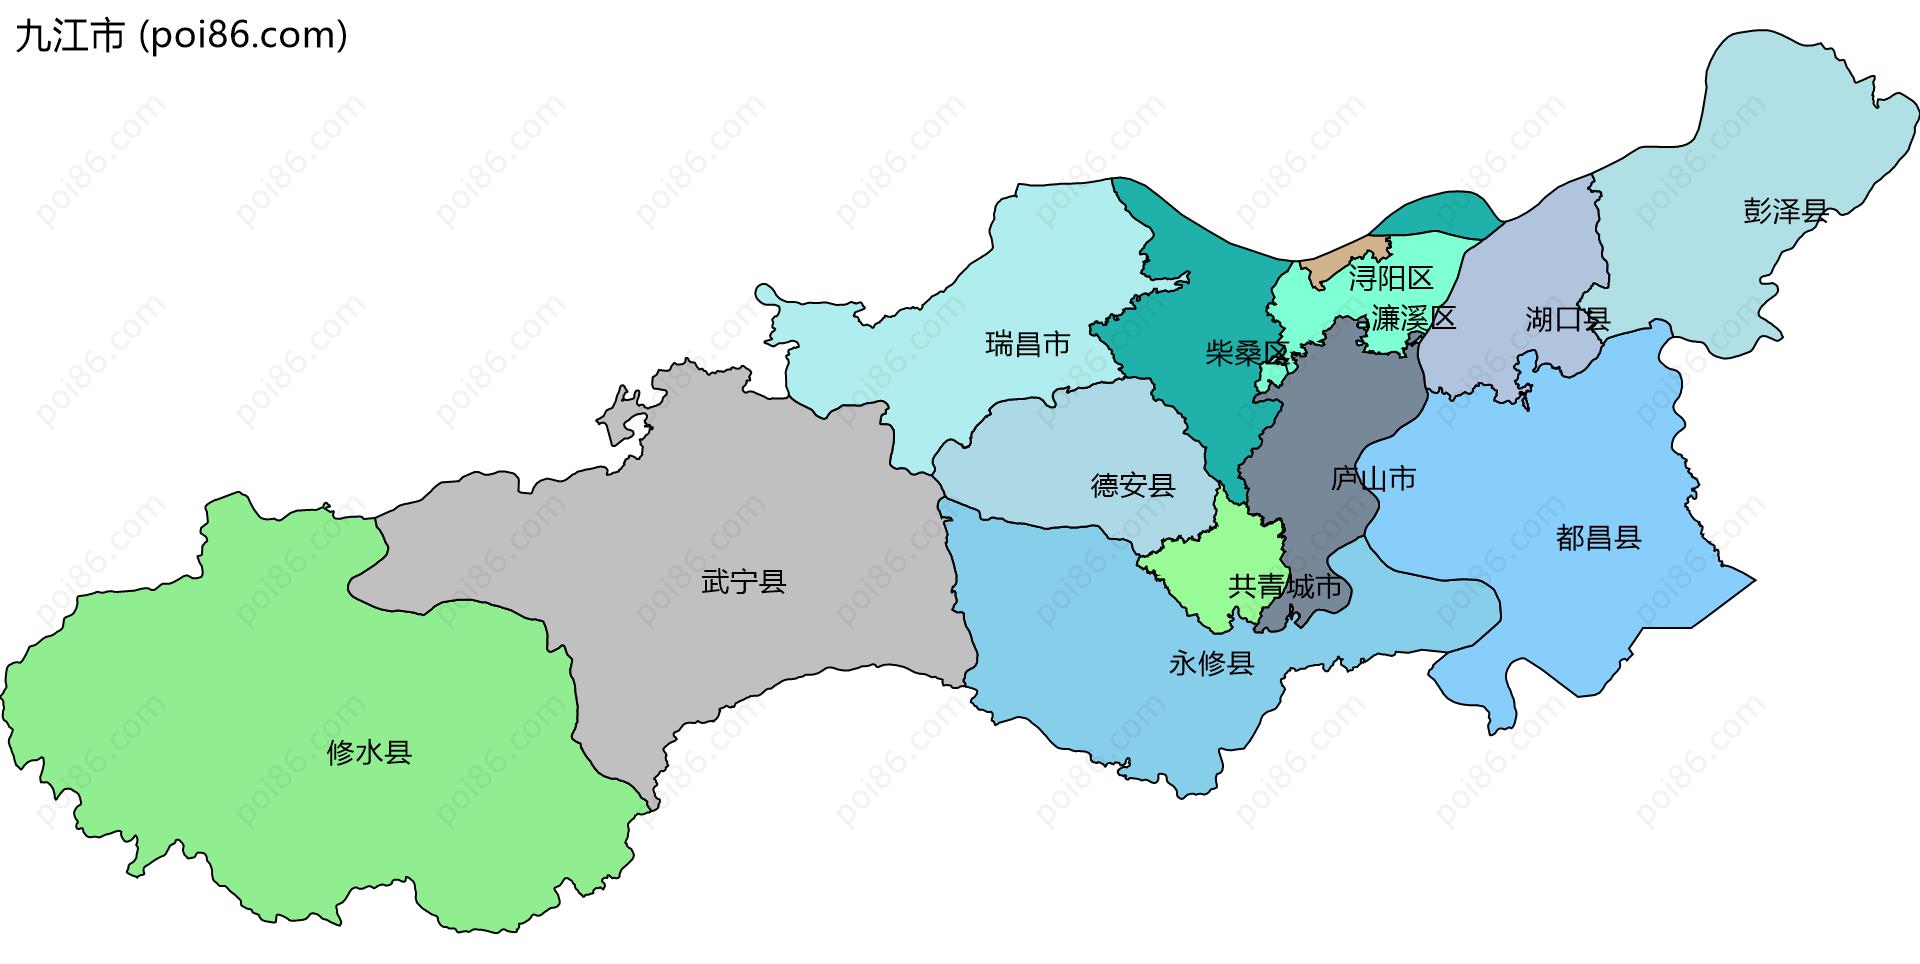 九江市边界地图